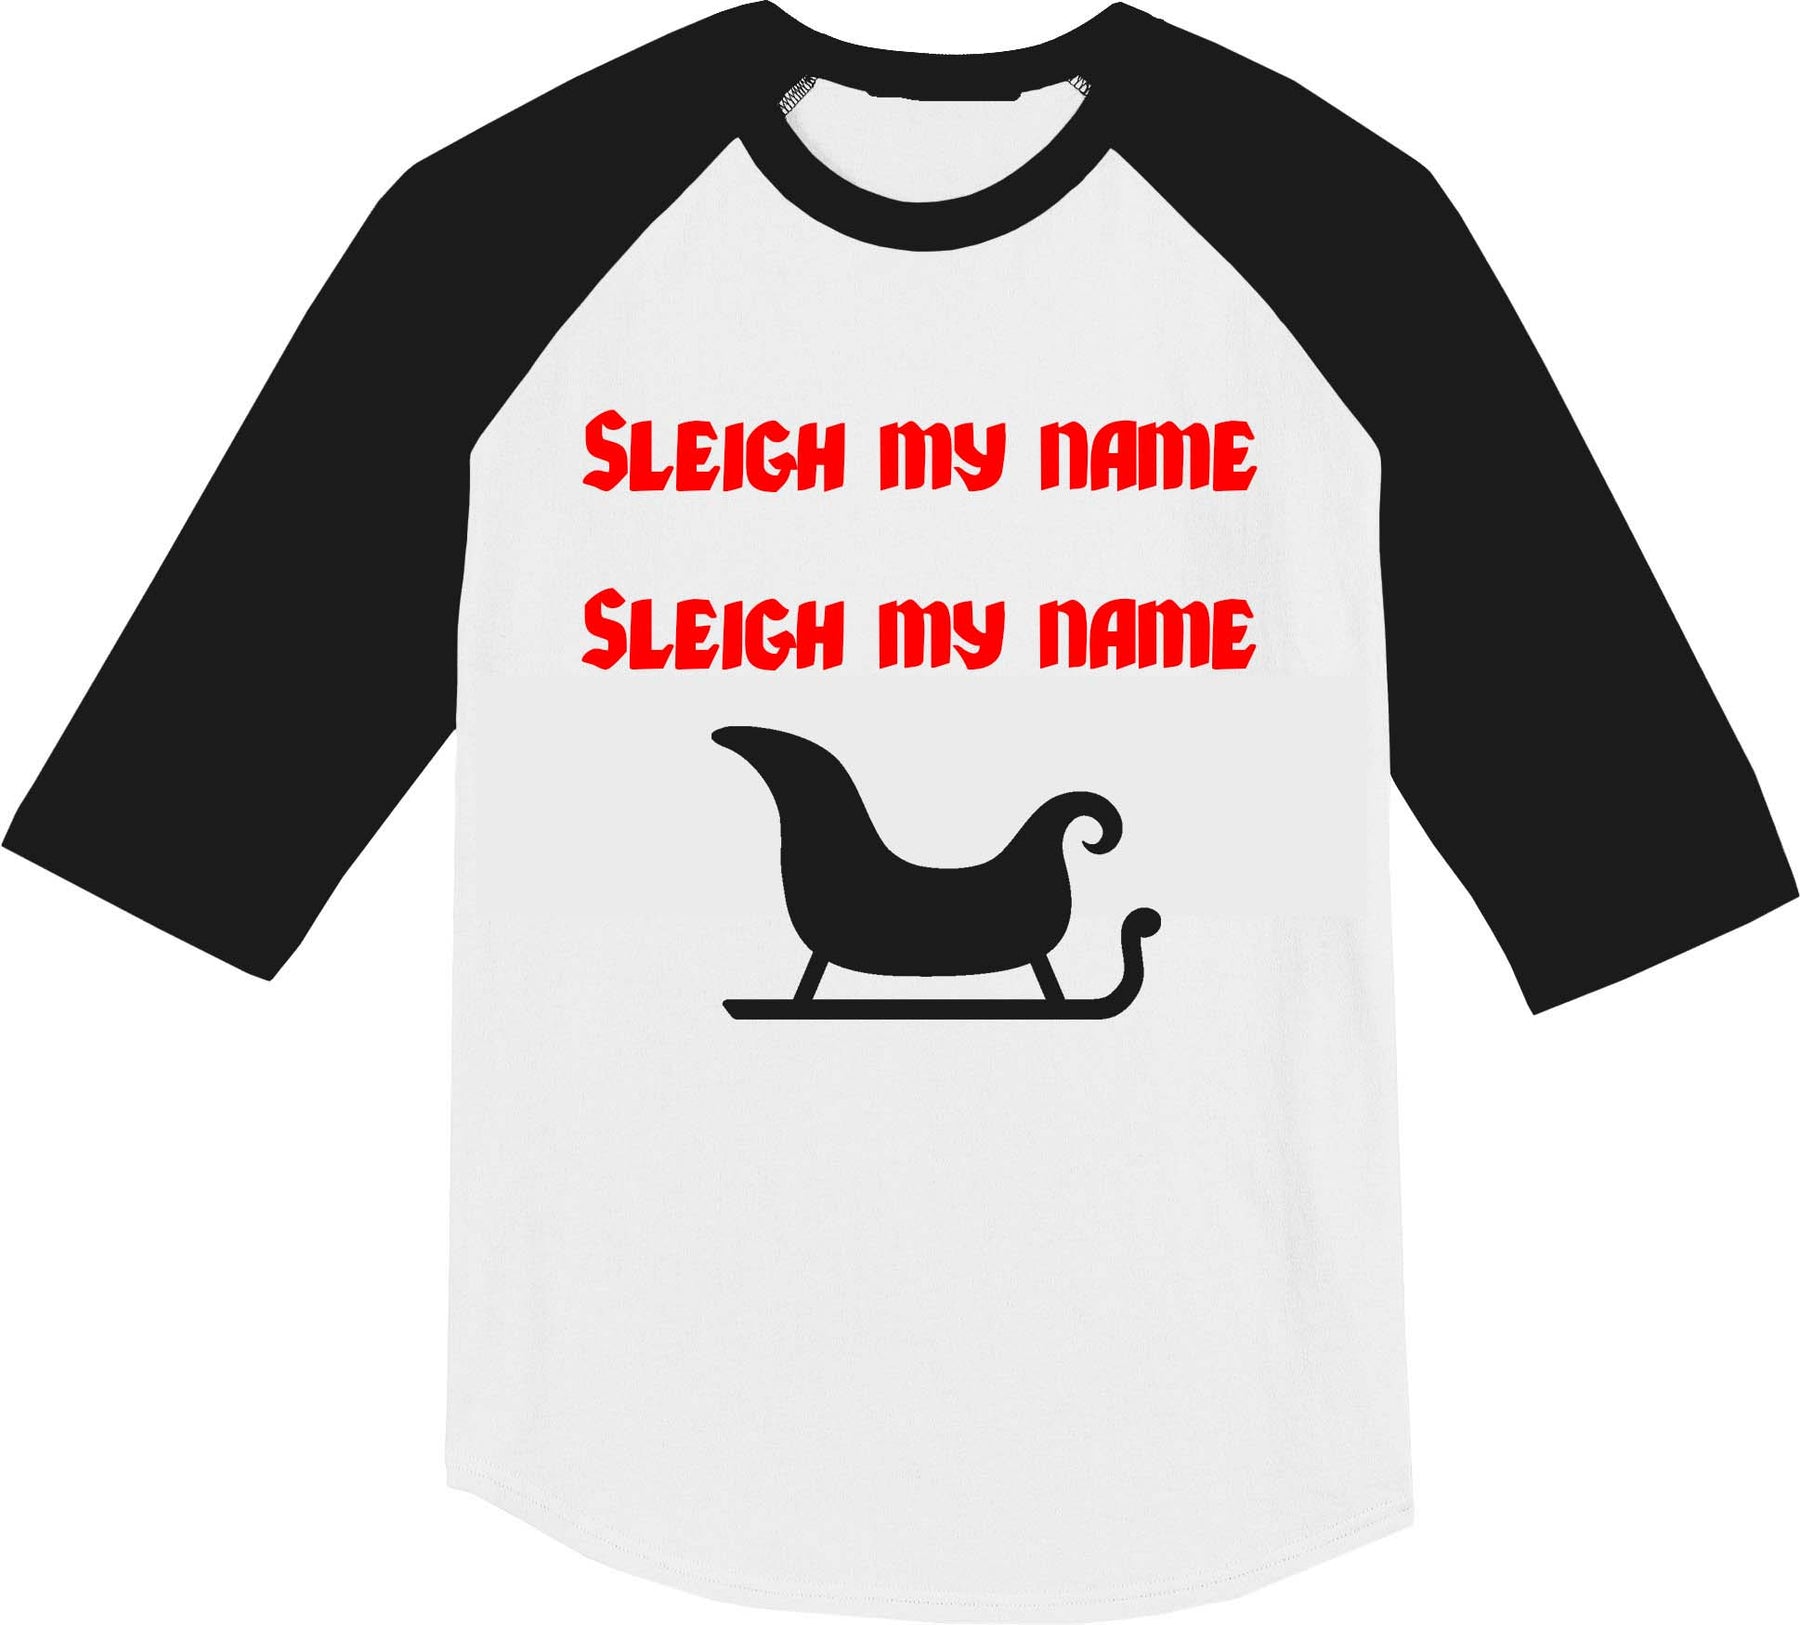 Sleigh my name Shirt